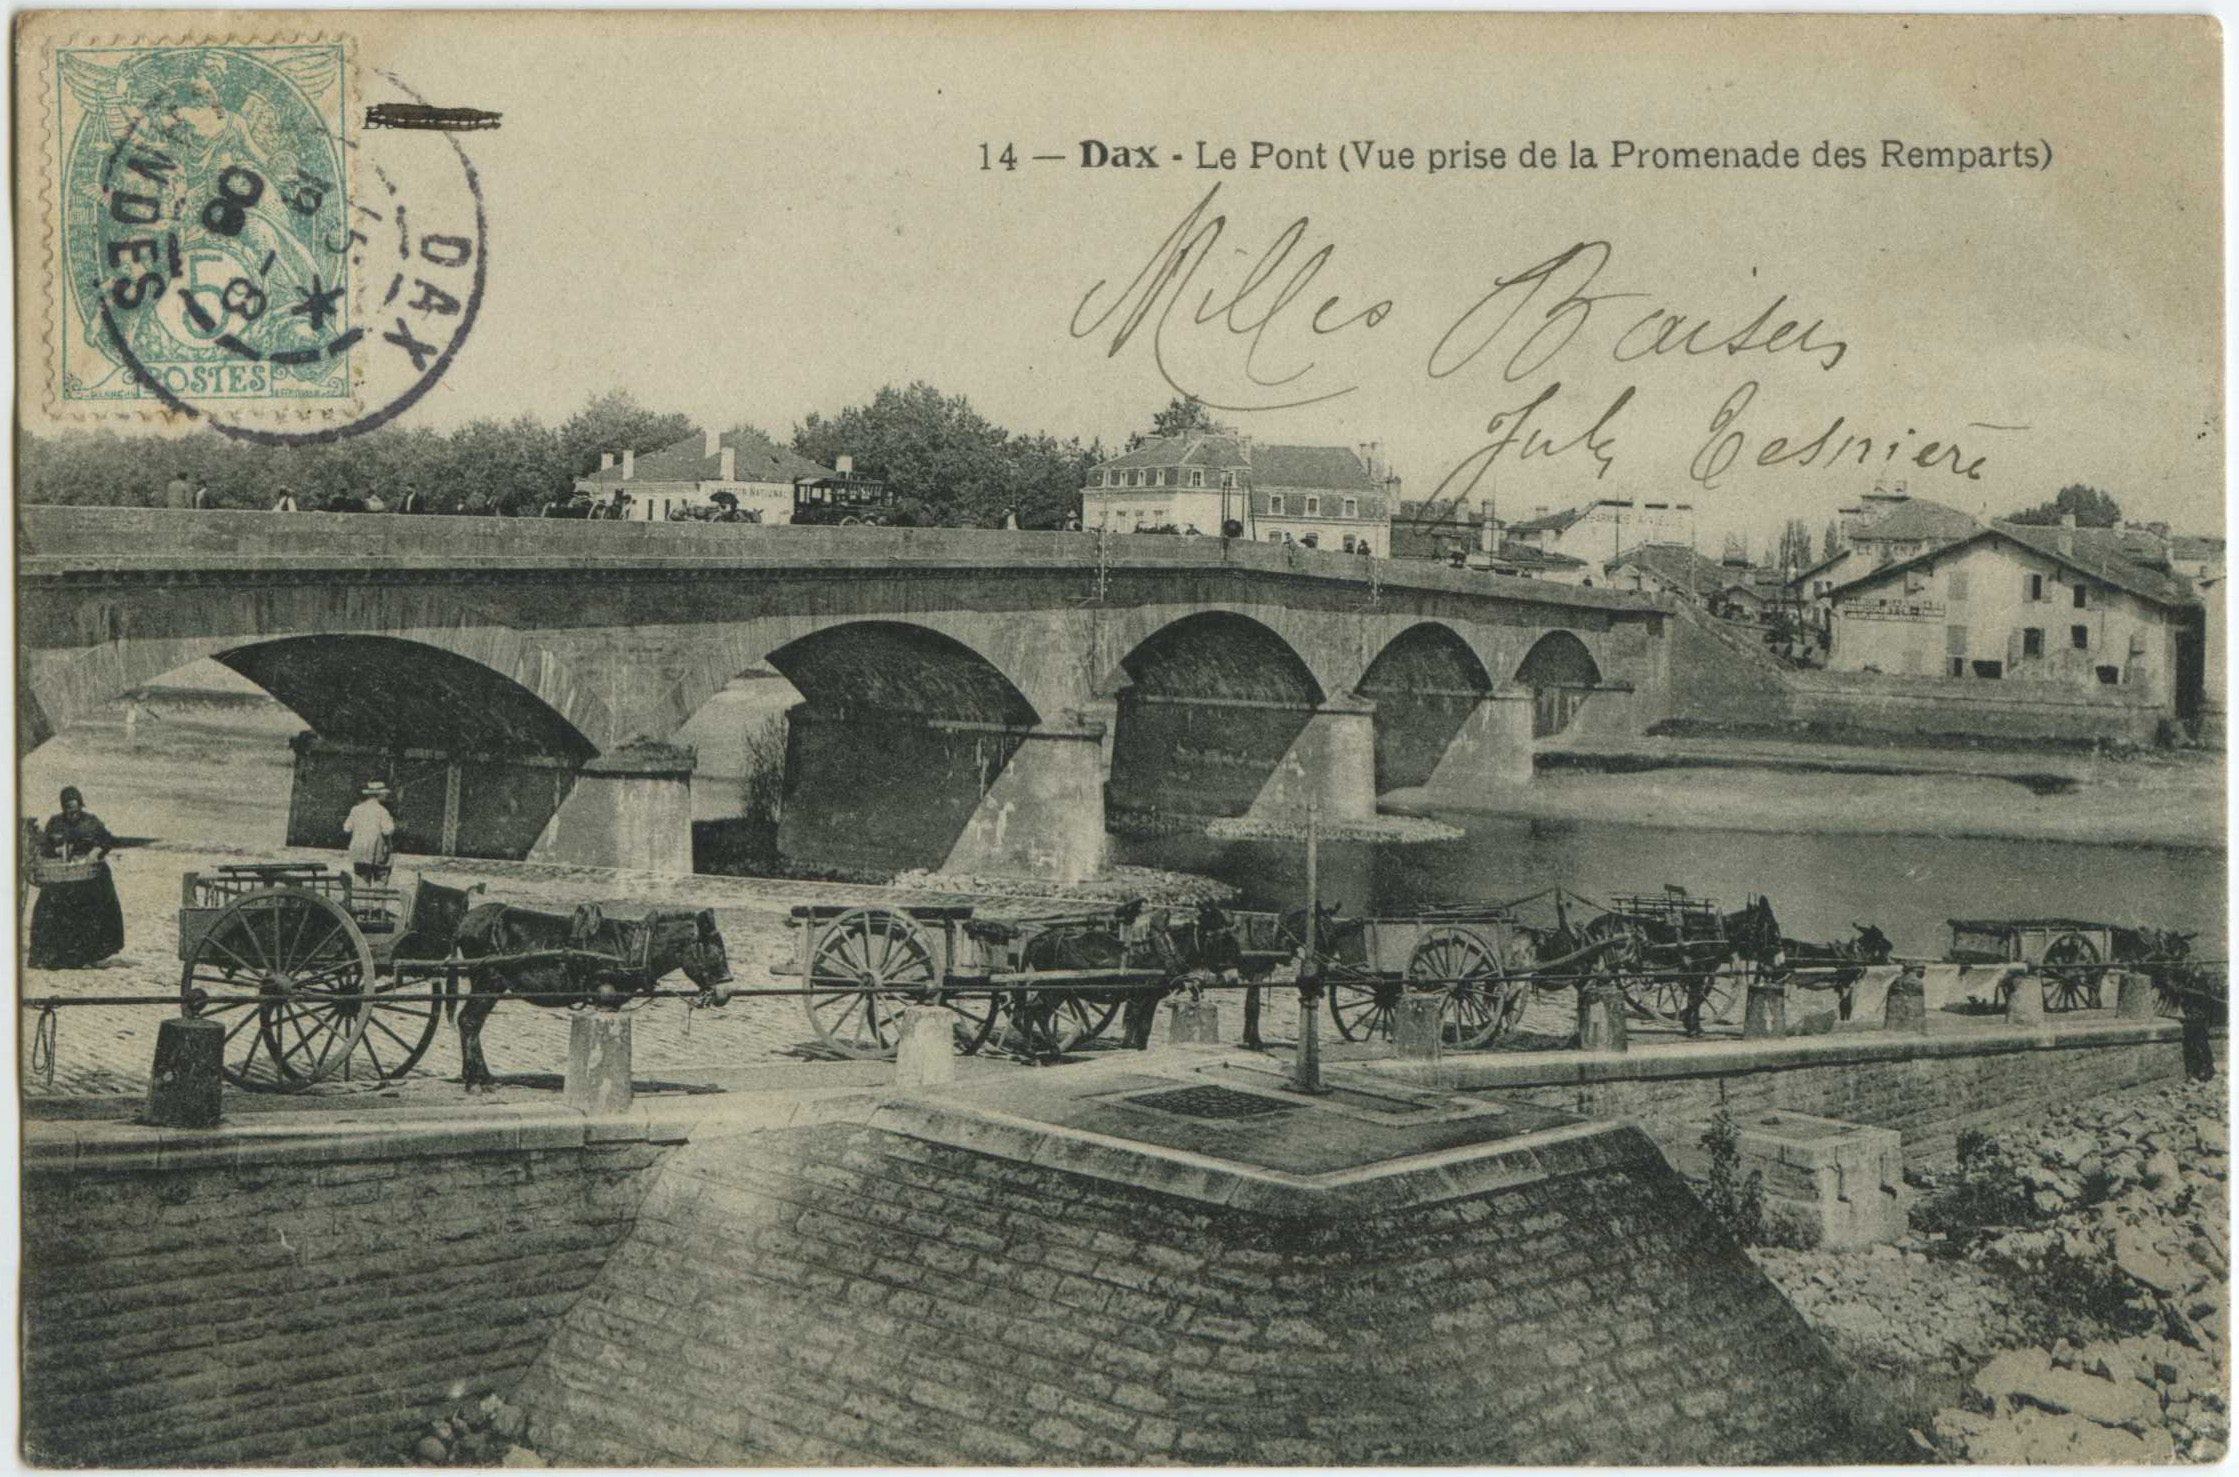 Dax - Le Pont (Vue prise de la Promenade des Remparts)